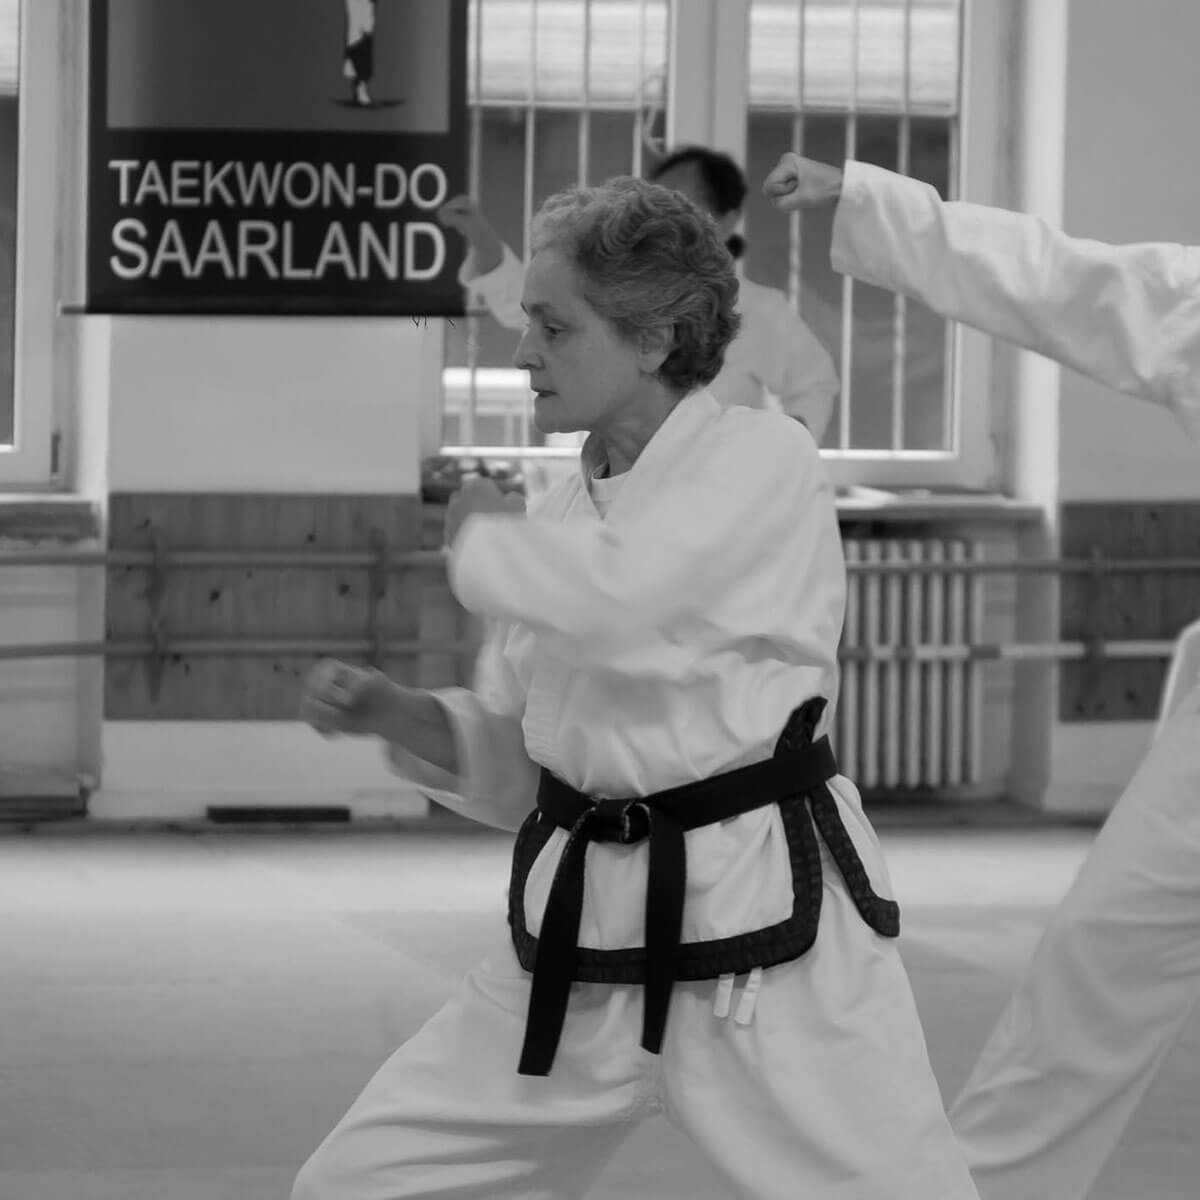 (c) Taekwondo-saarland.de